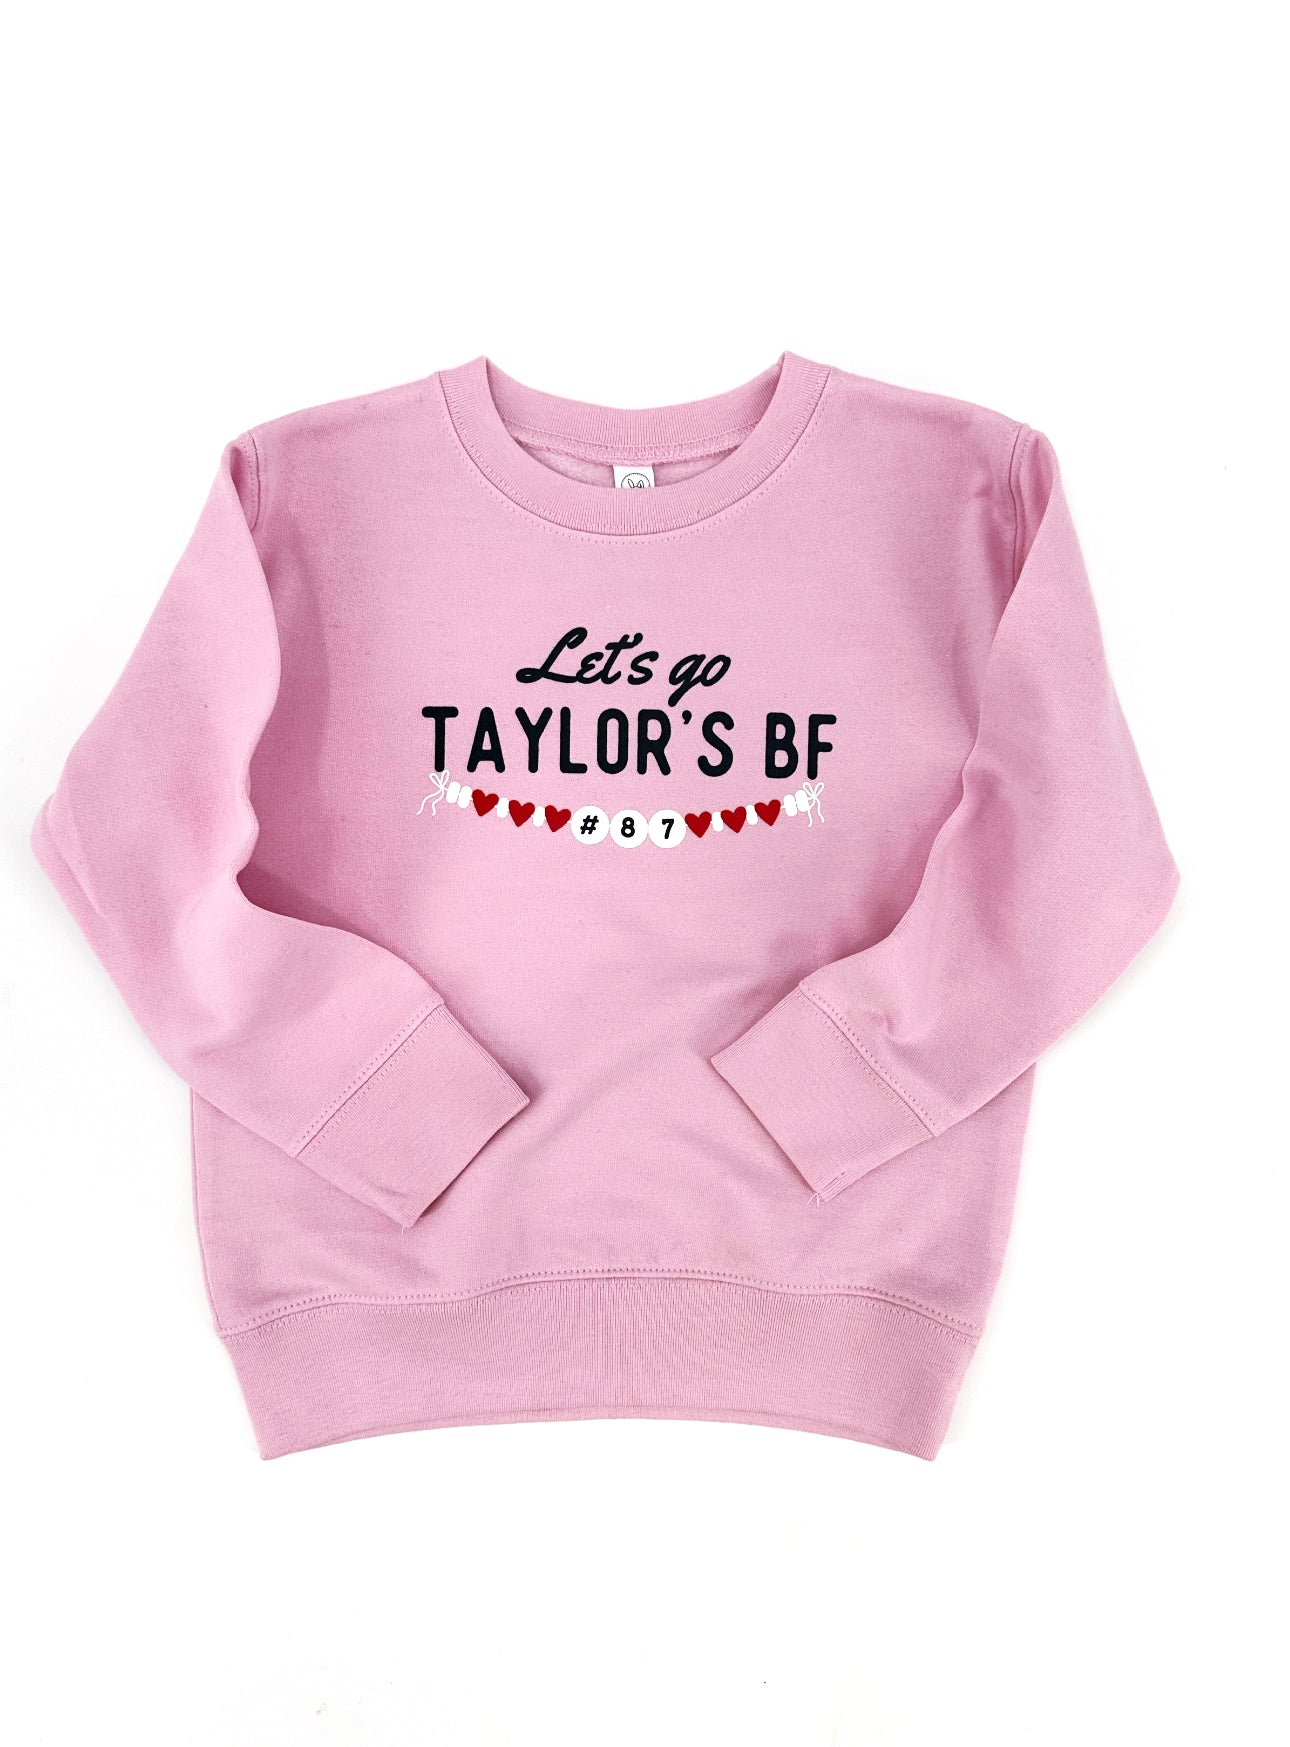 Taylor’S BF sweatshirt